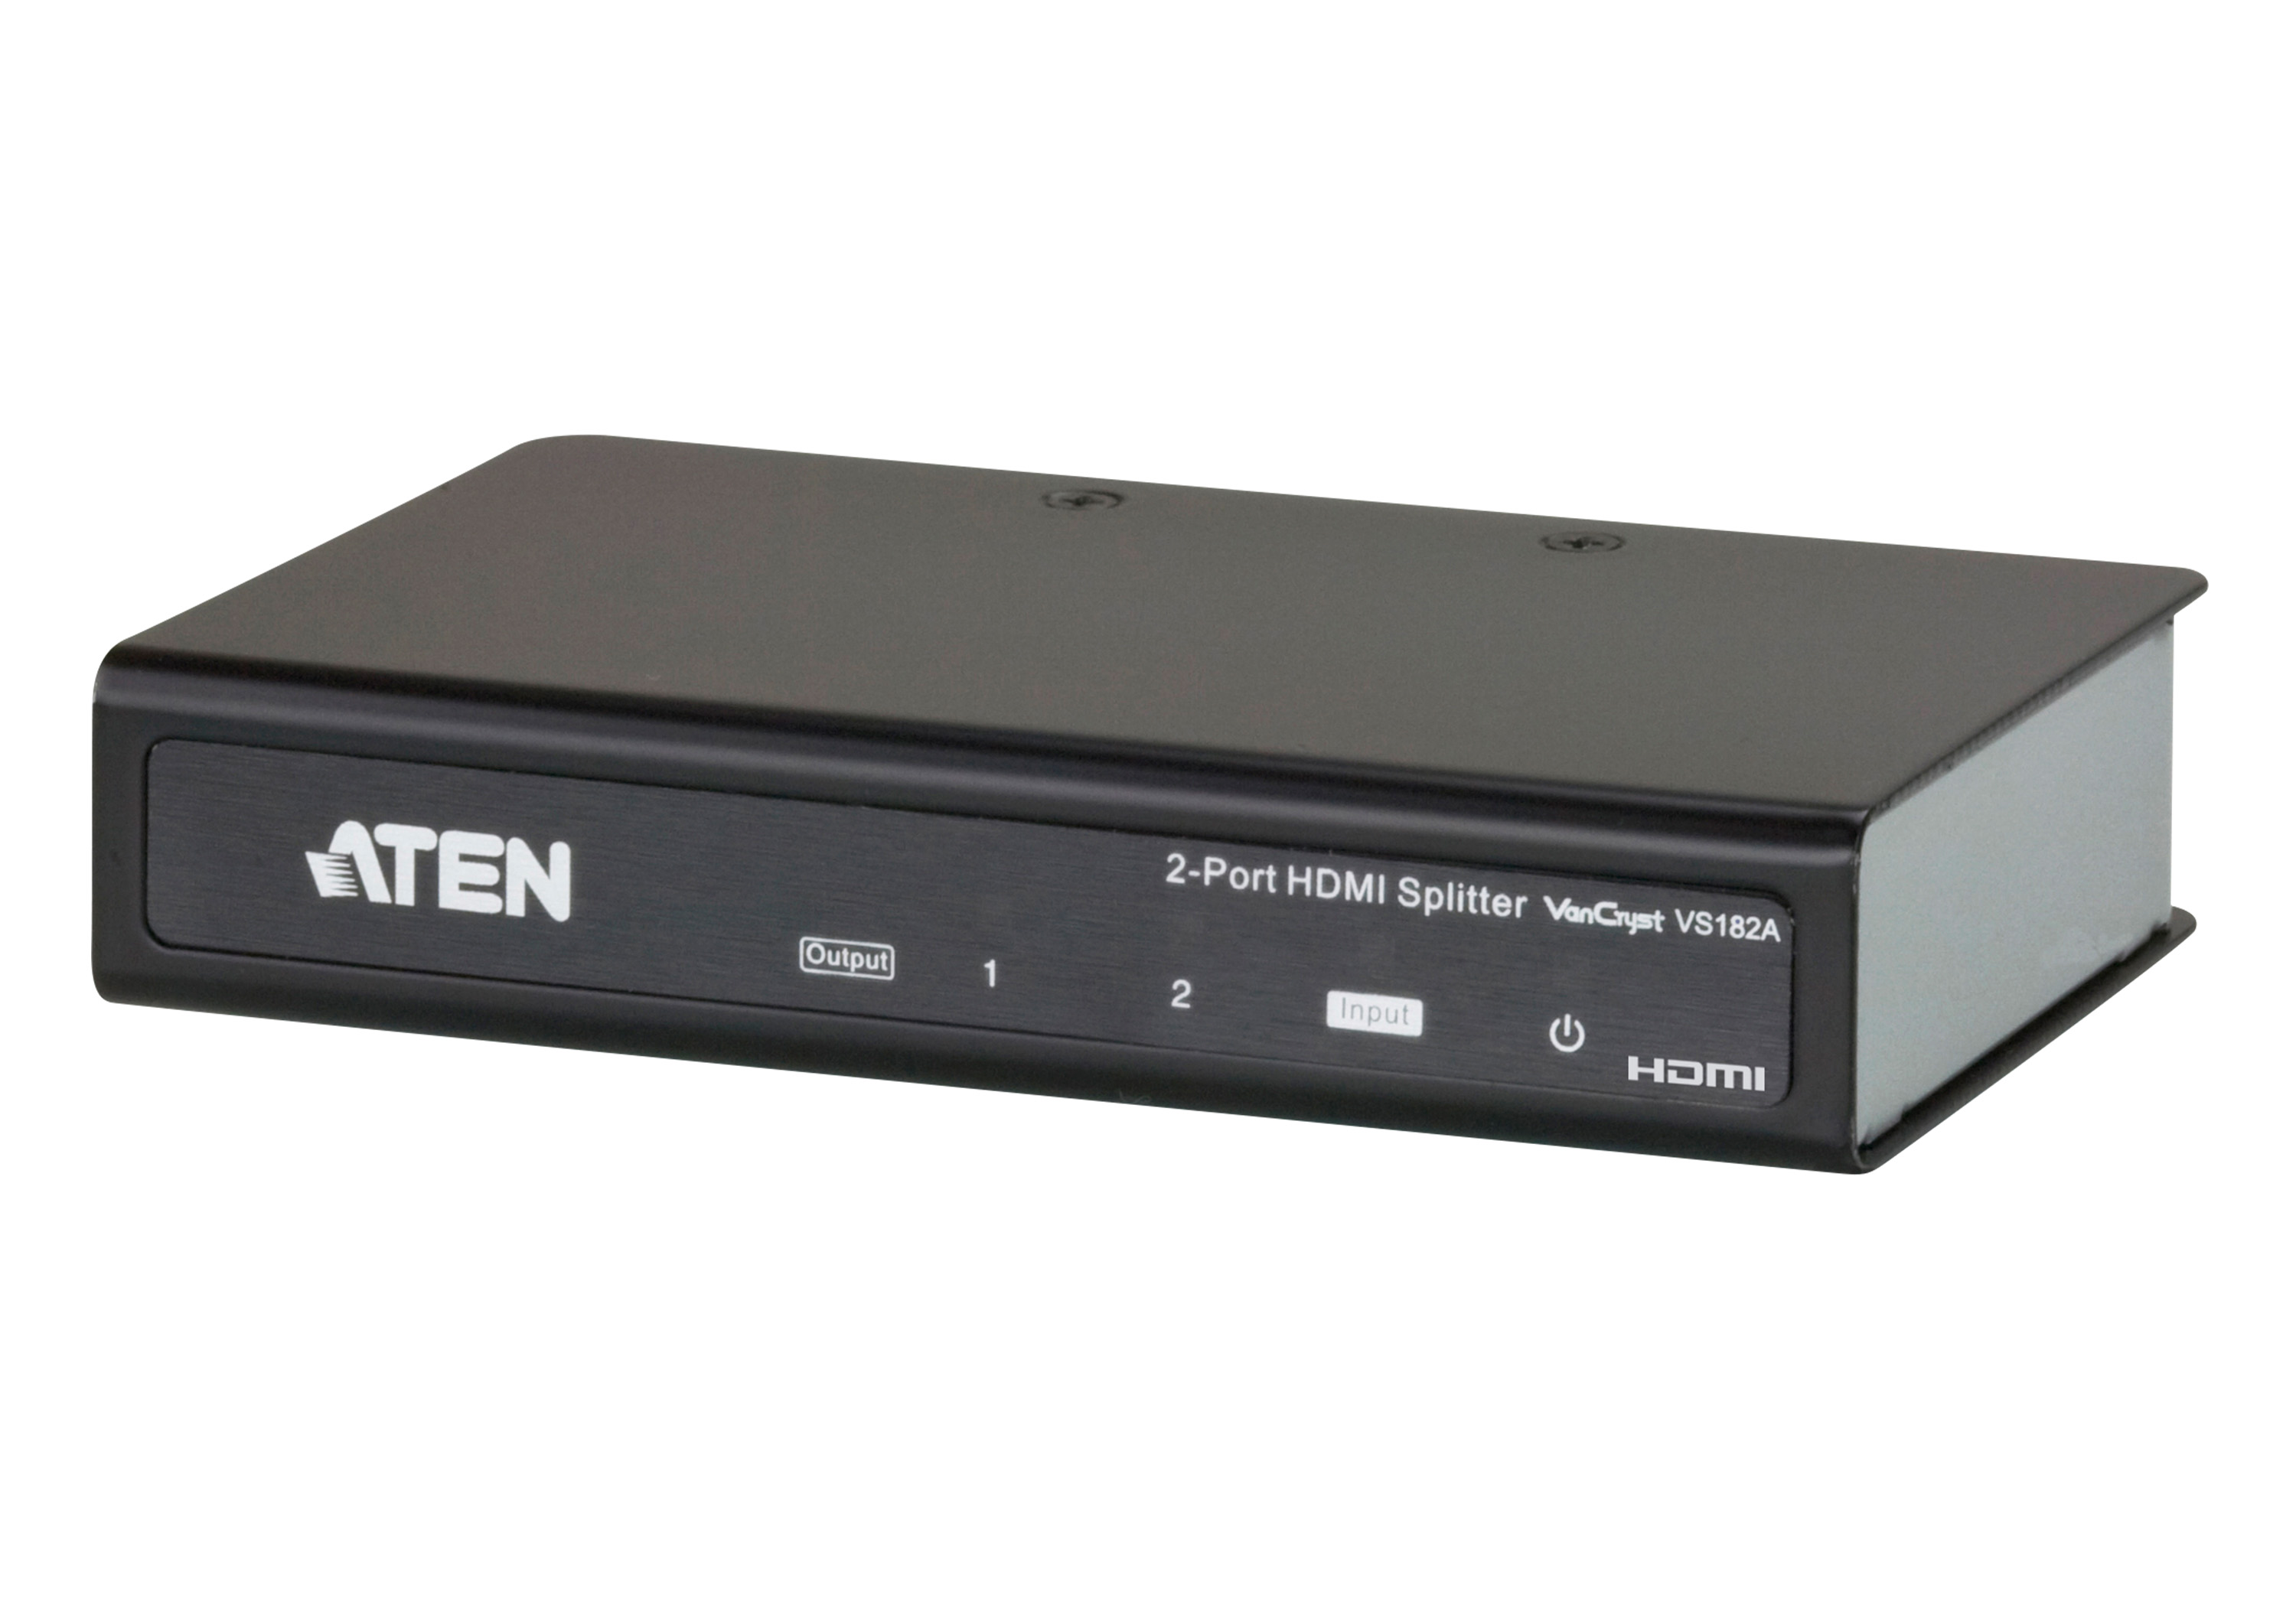 取寄 ATEN VS182A 1入力 2出力 HDMIビデオスプリッター